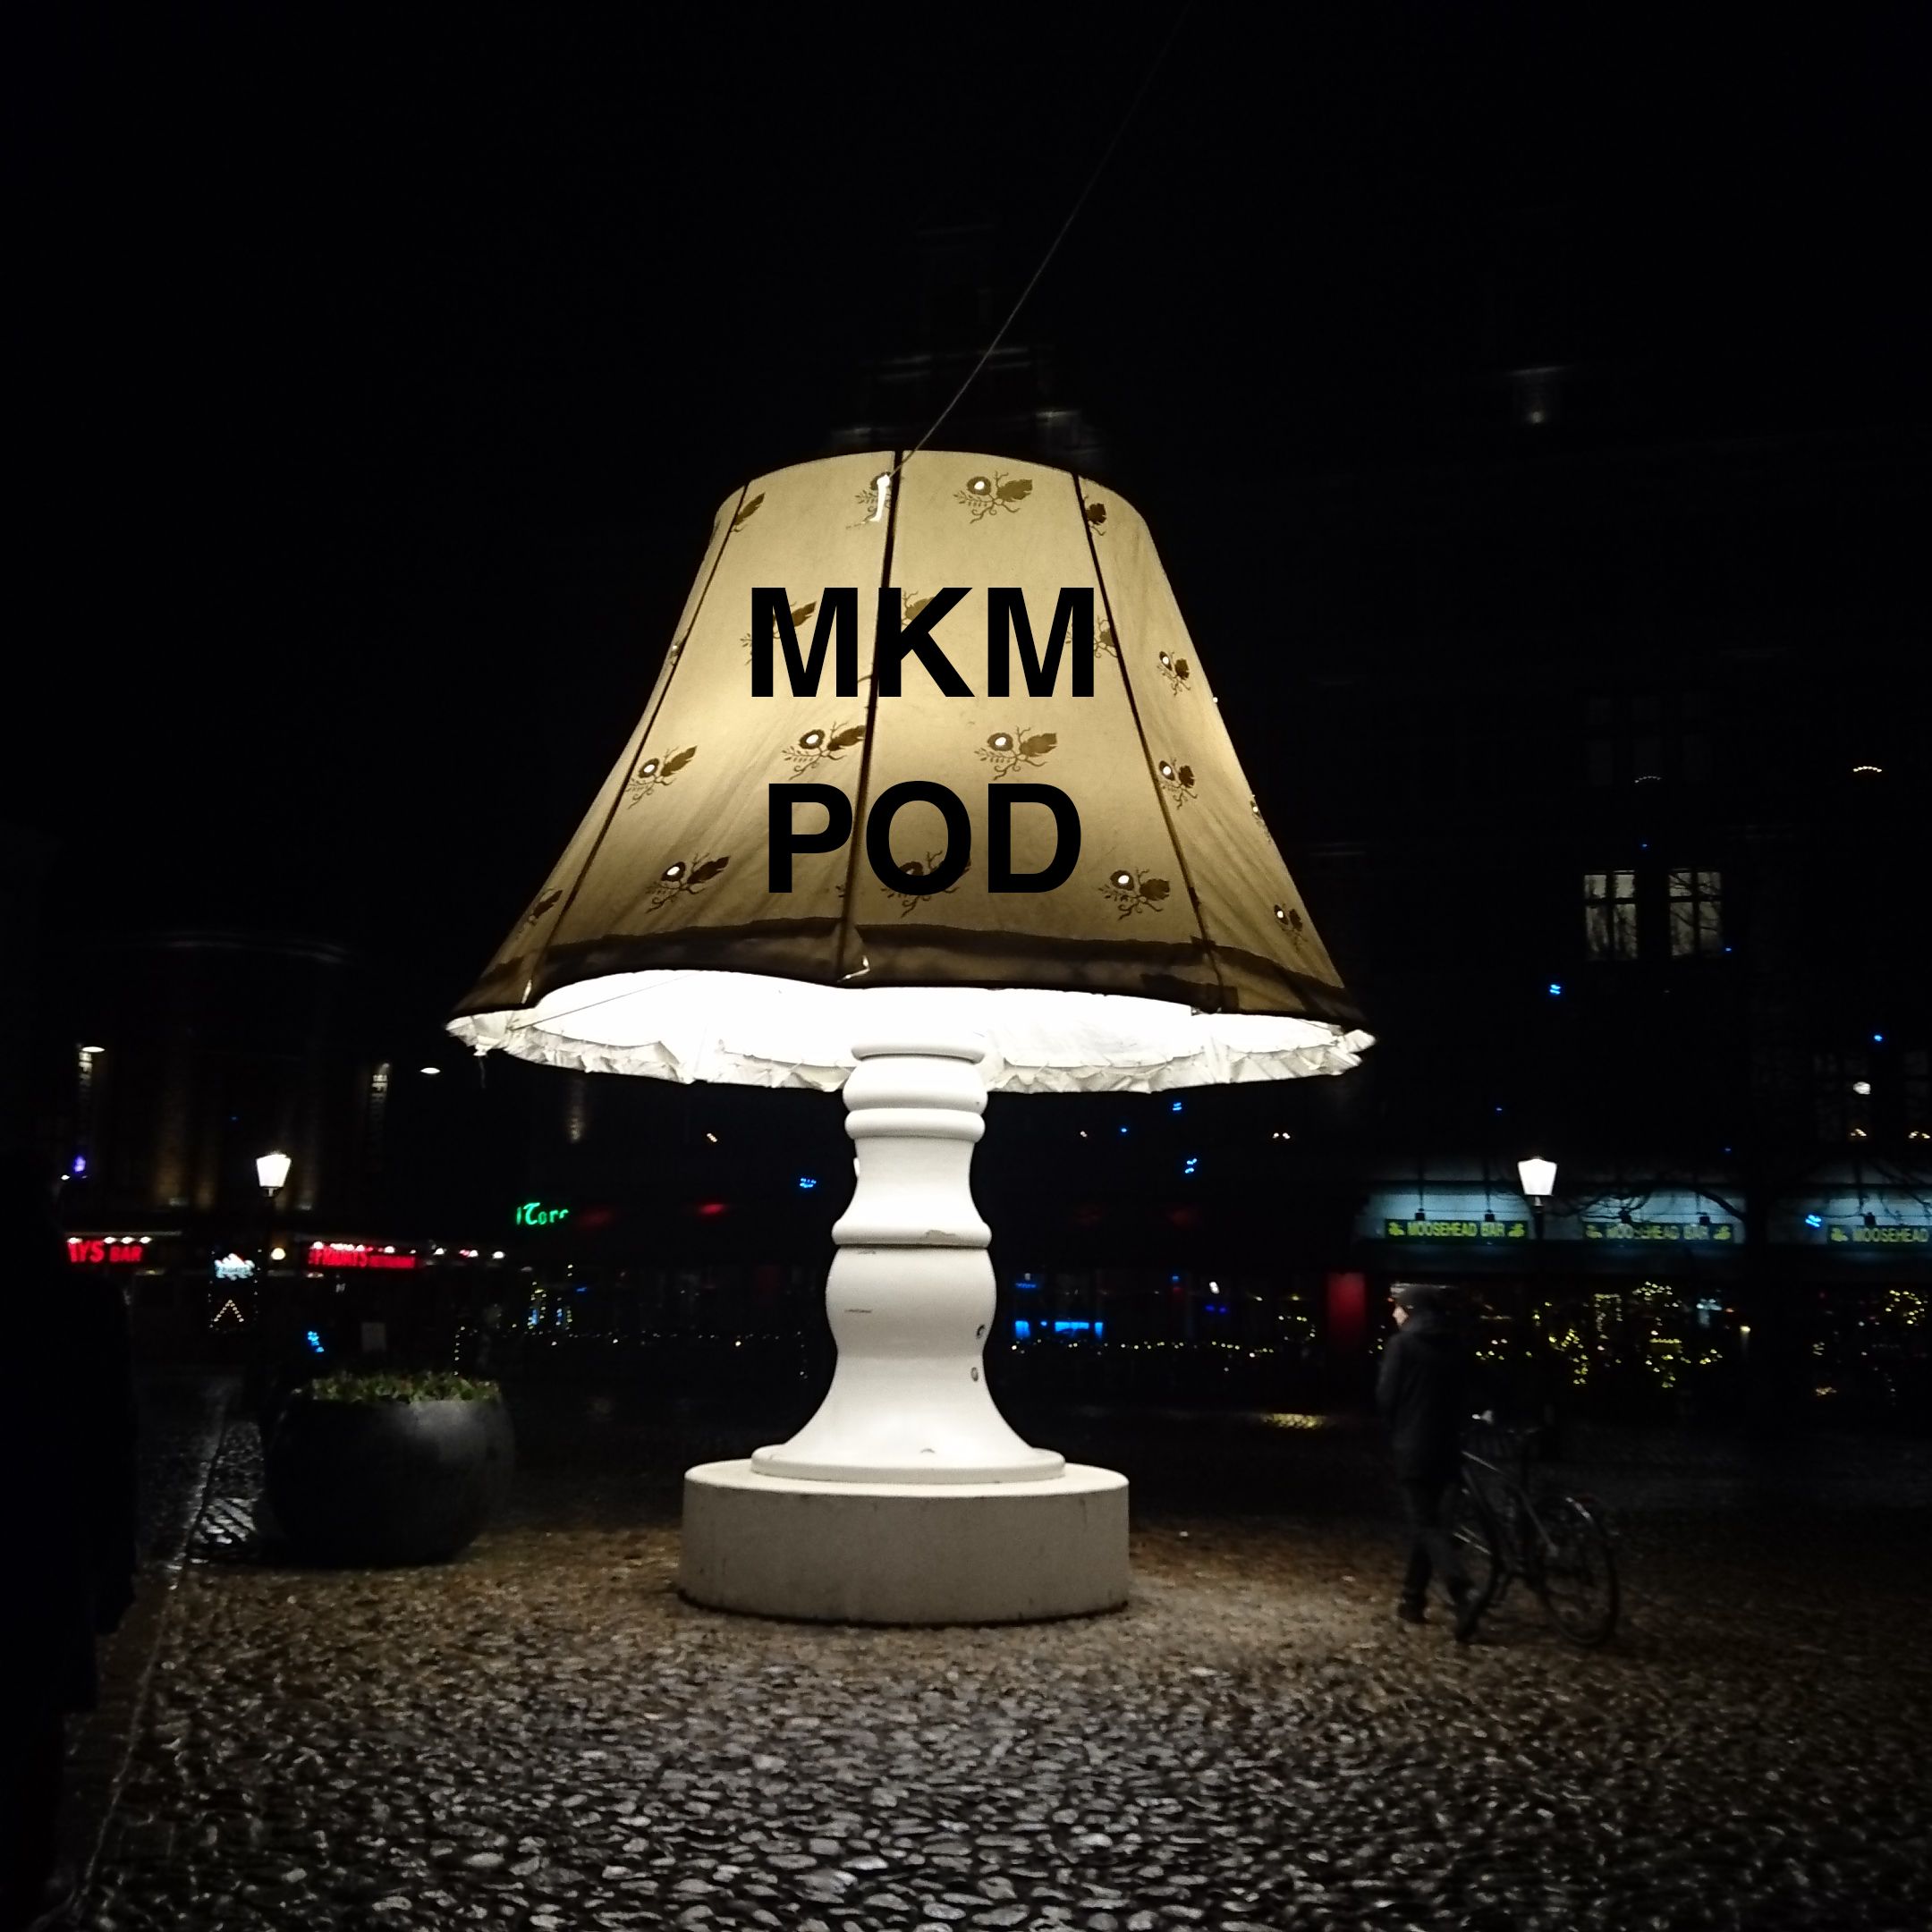 MKM Pod:Ko, Martin, Krasen